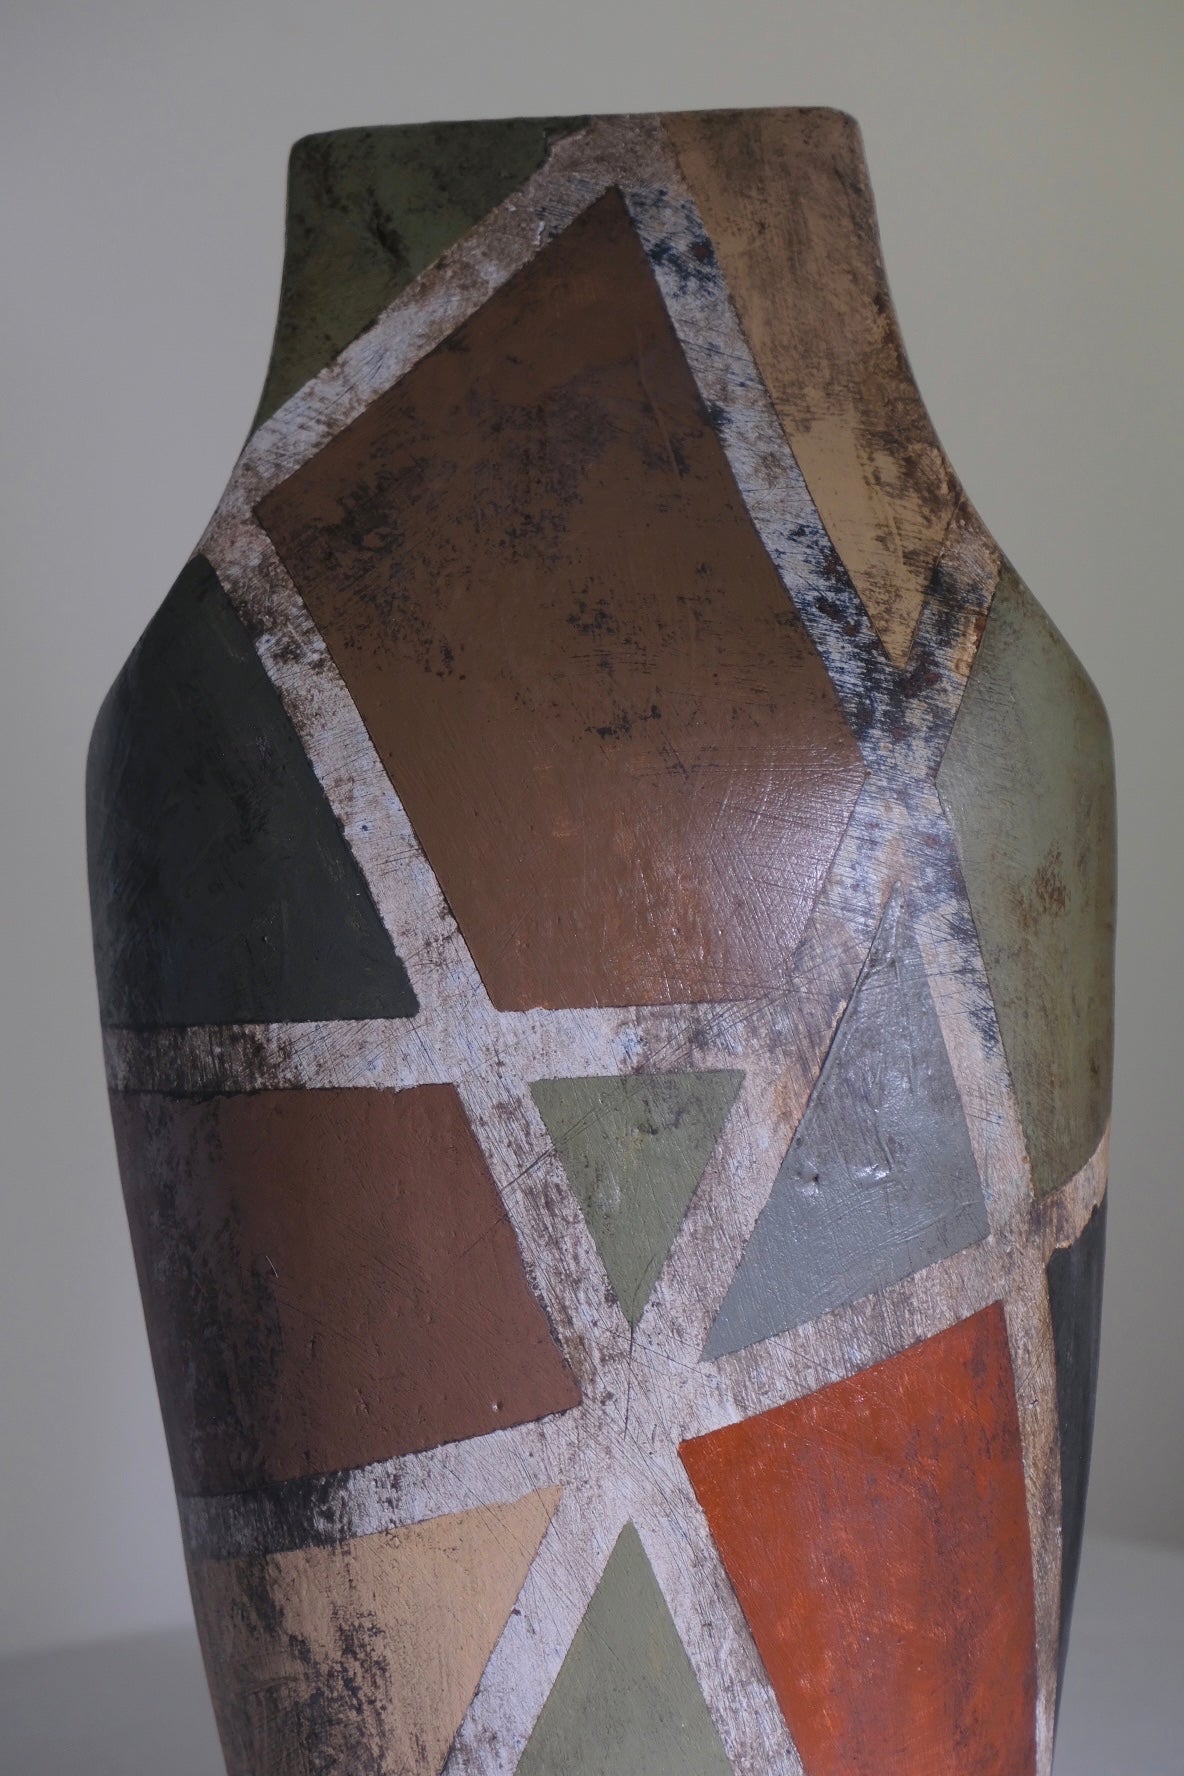 Antiqued Geometry Studio Pottery Vase